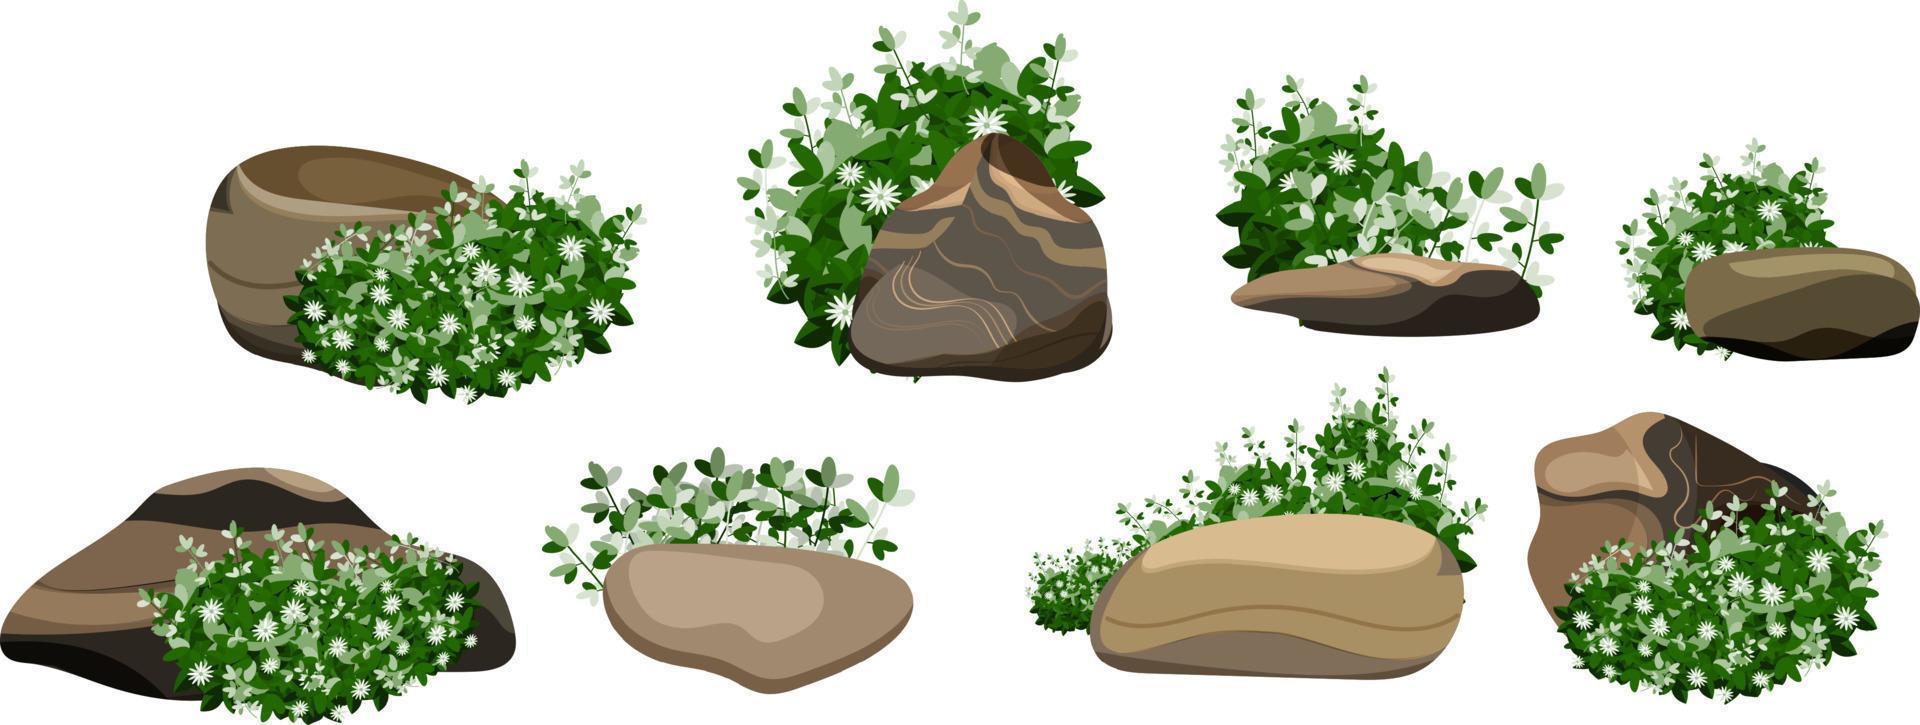 samling av stenar och växter av olika former.kustnära småsten, kullerstenar, grus, mineraler och geologisk formationer.rock fragment, stenblock och byggnad material. vektor